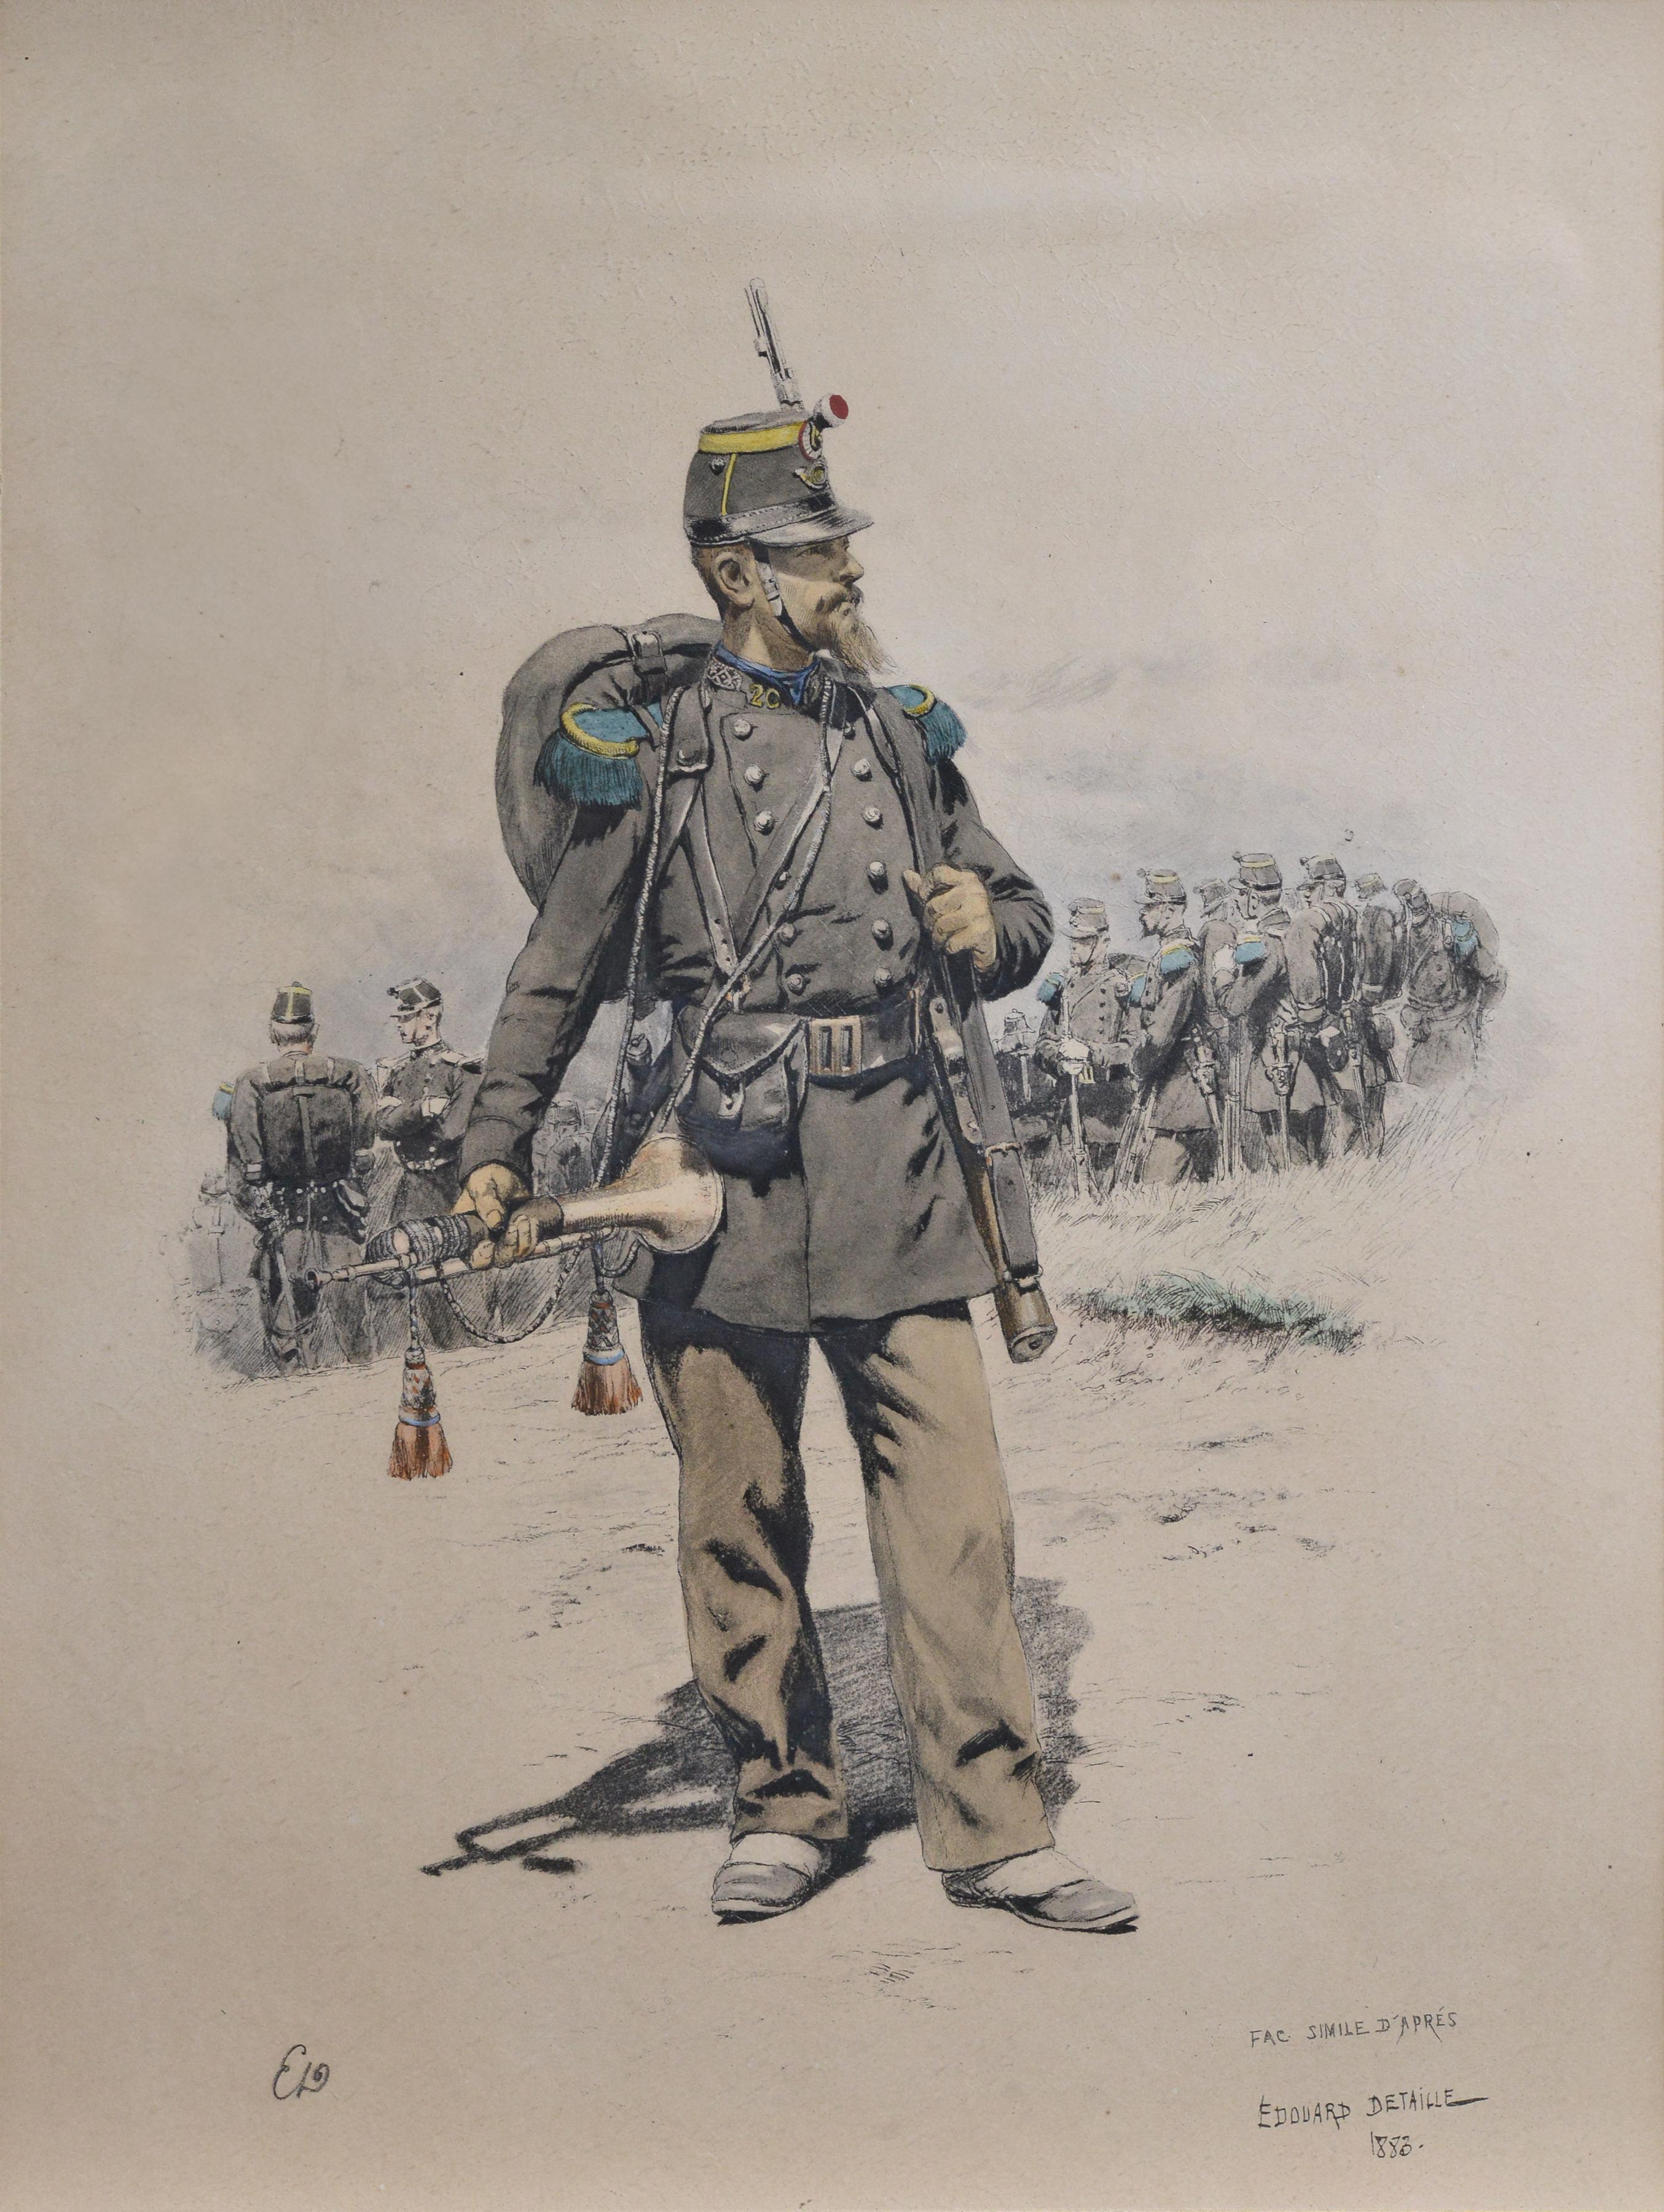 Bugler of Chasseurs Corps von Ed Detaille, Facsimile-Farblithographie des 19. Jahrhunderts – Print von Jean Baptiste Édouard Detaille